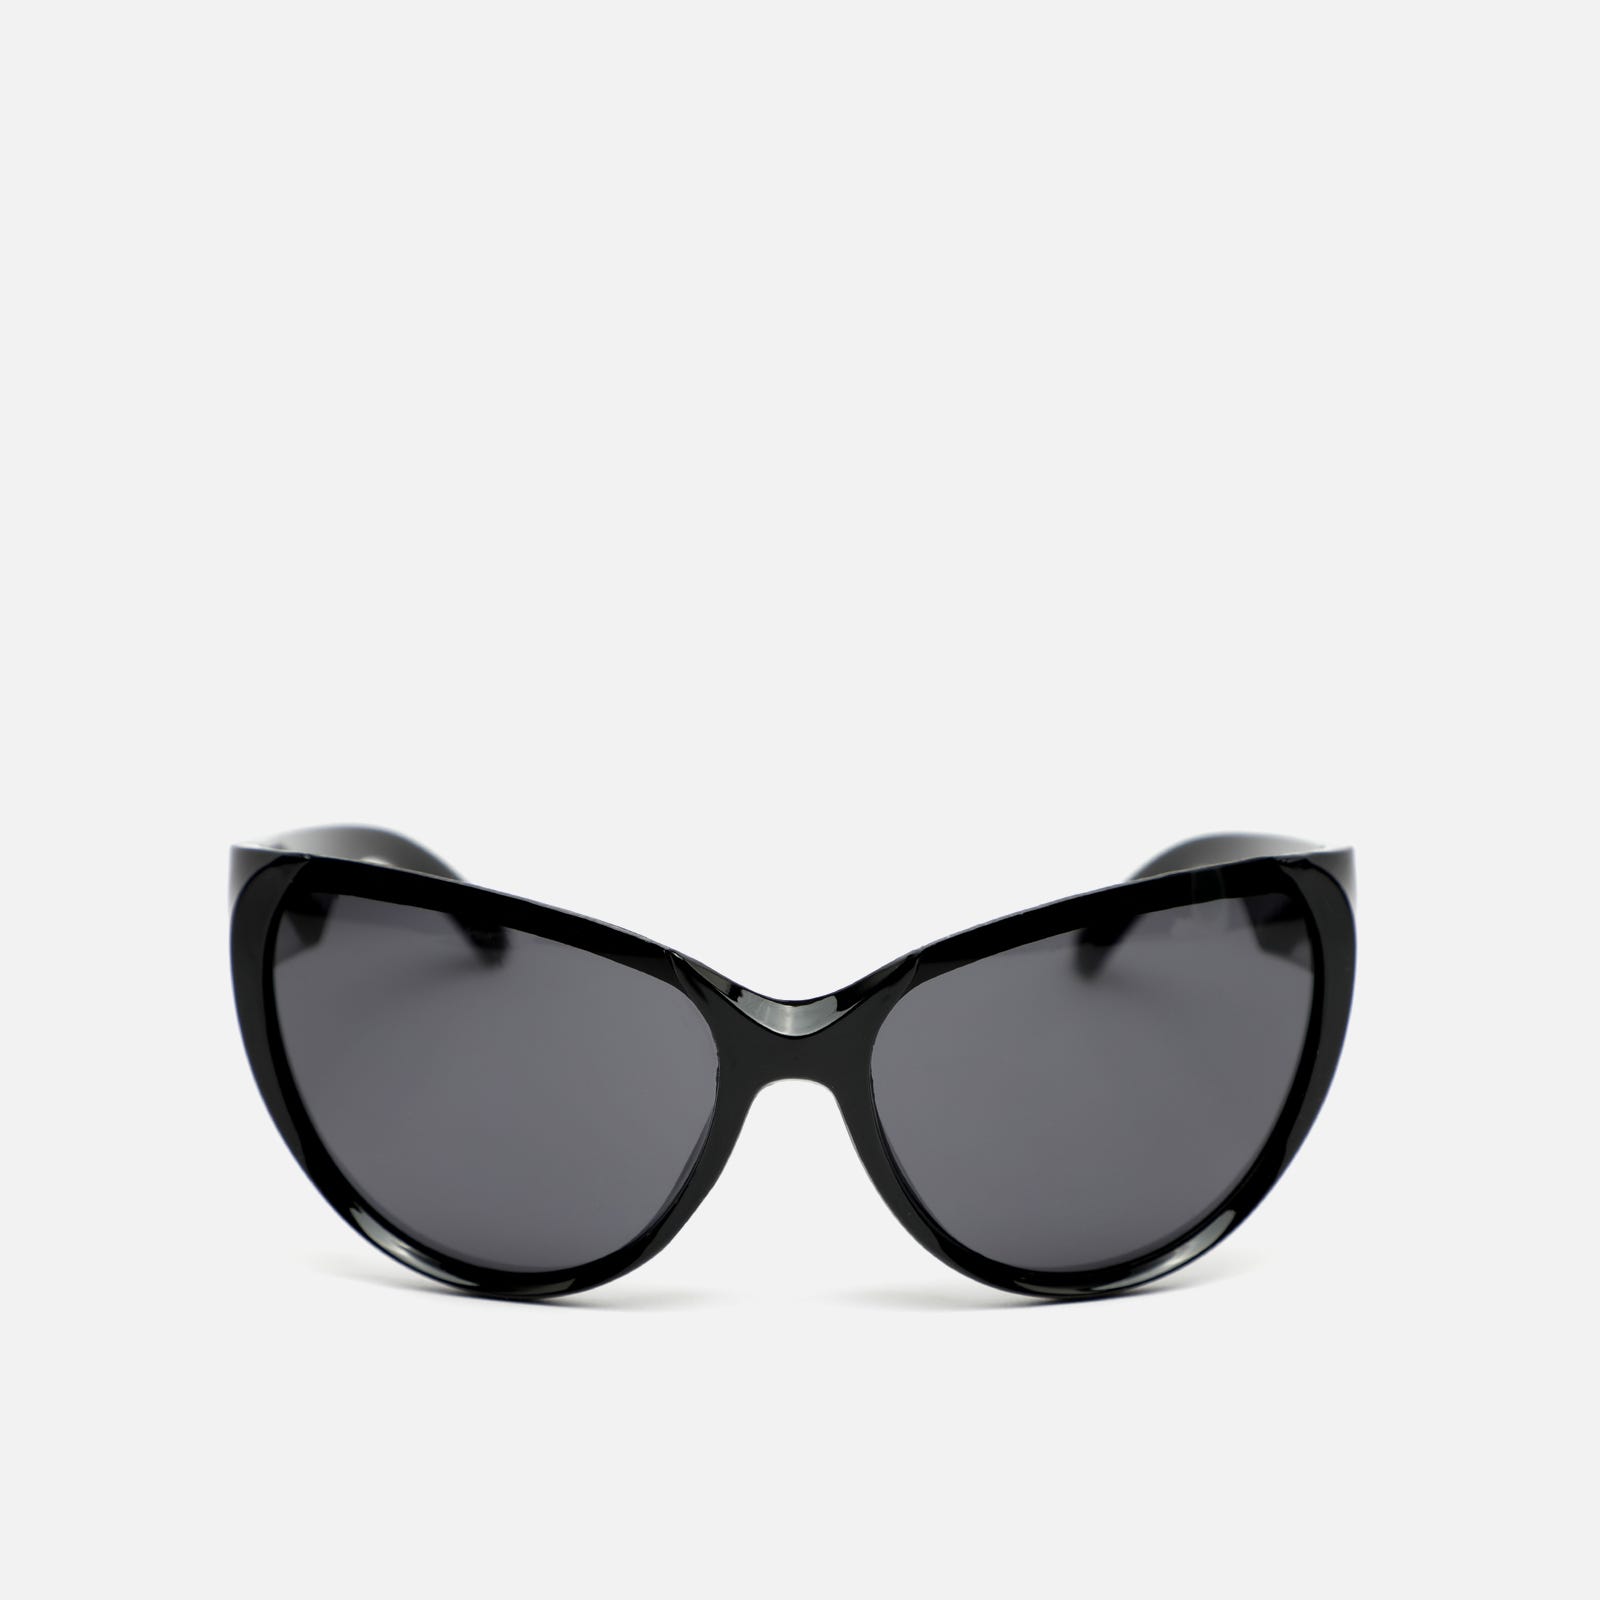 Gafas de sol ojo de gato con montura de pasta